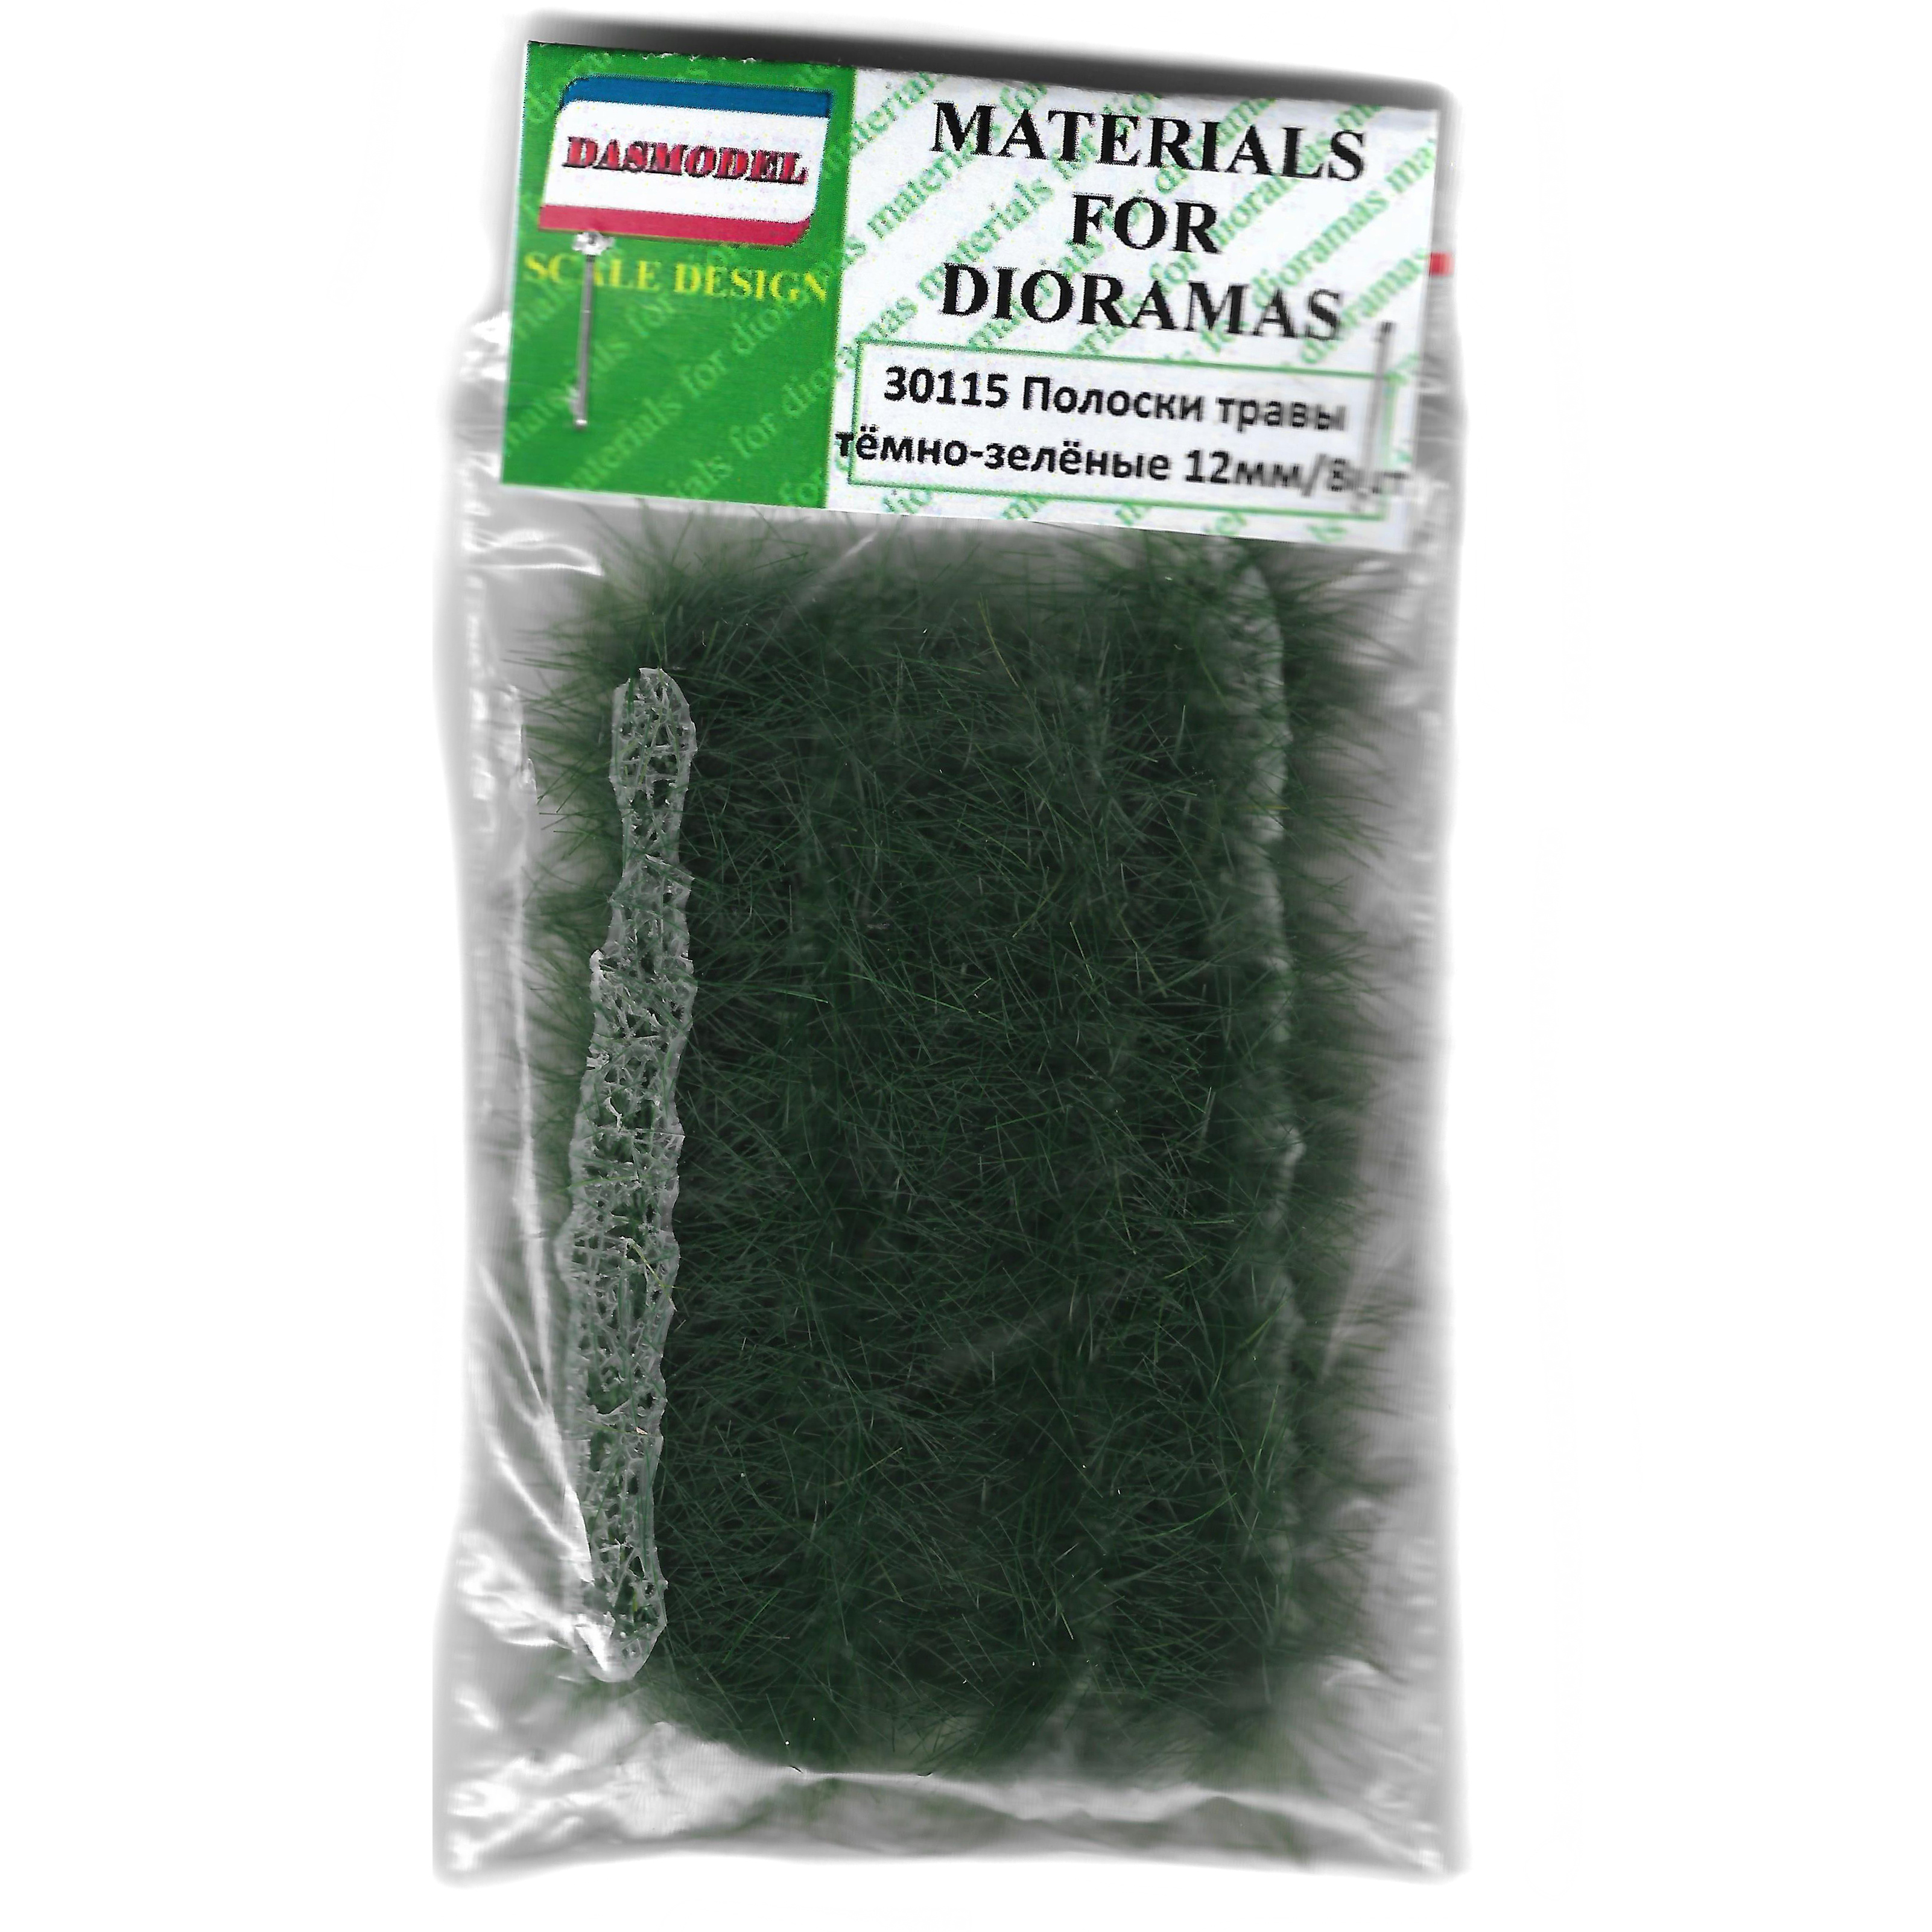 30115  материалы для диорам  Полоски травы 12мм. Темно-зеленые 8 шт.